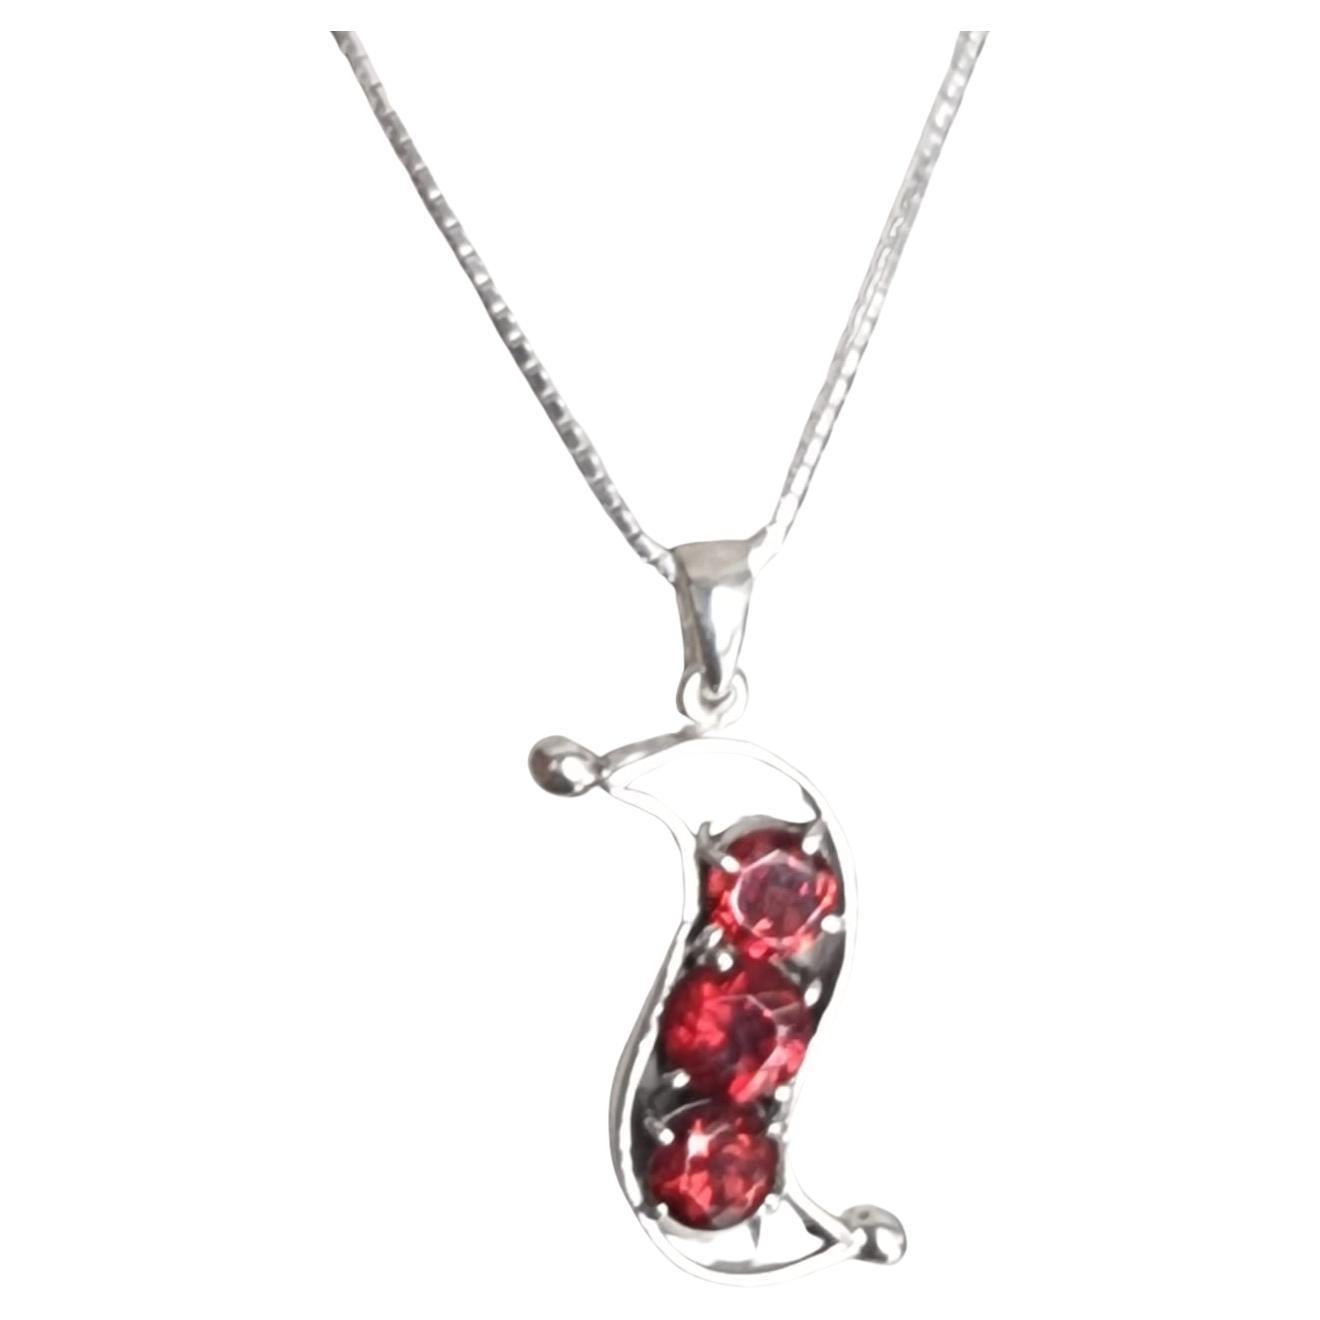 Voici notre superbe collier pendentif à 3 pierres en grenat rouge, un mélange envoûtant d'élégance et de design inspiré de la nature. Réalisé avec une attention méticuleuse aux détails, ce collier exquis présente trois grenats ronds, pesant chacun